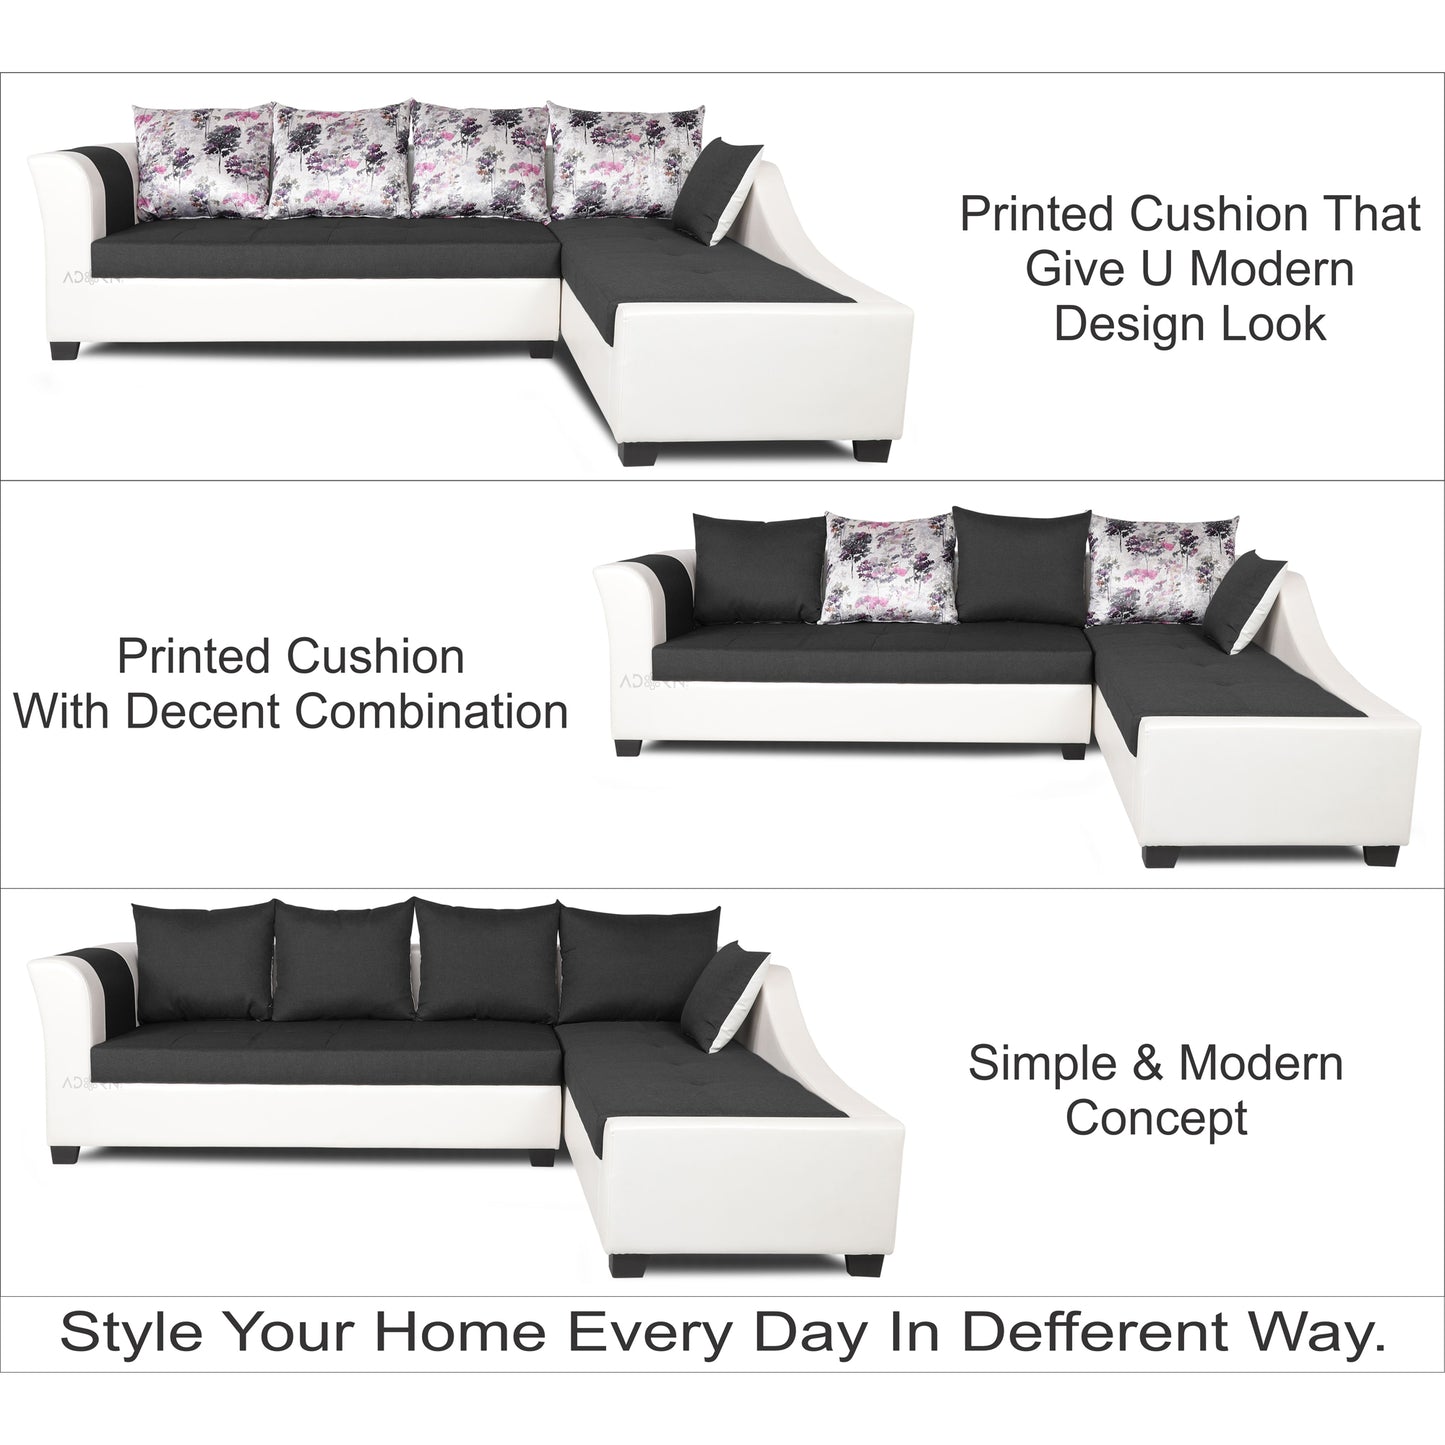 Adorn India Aliana L Shape Leatherette Fabric 6 Seater Sofa (Dark Grey & White)